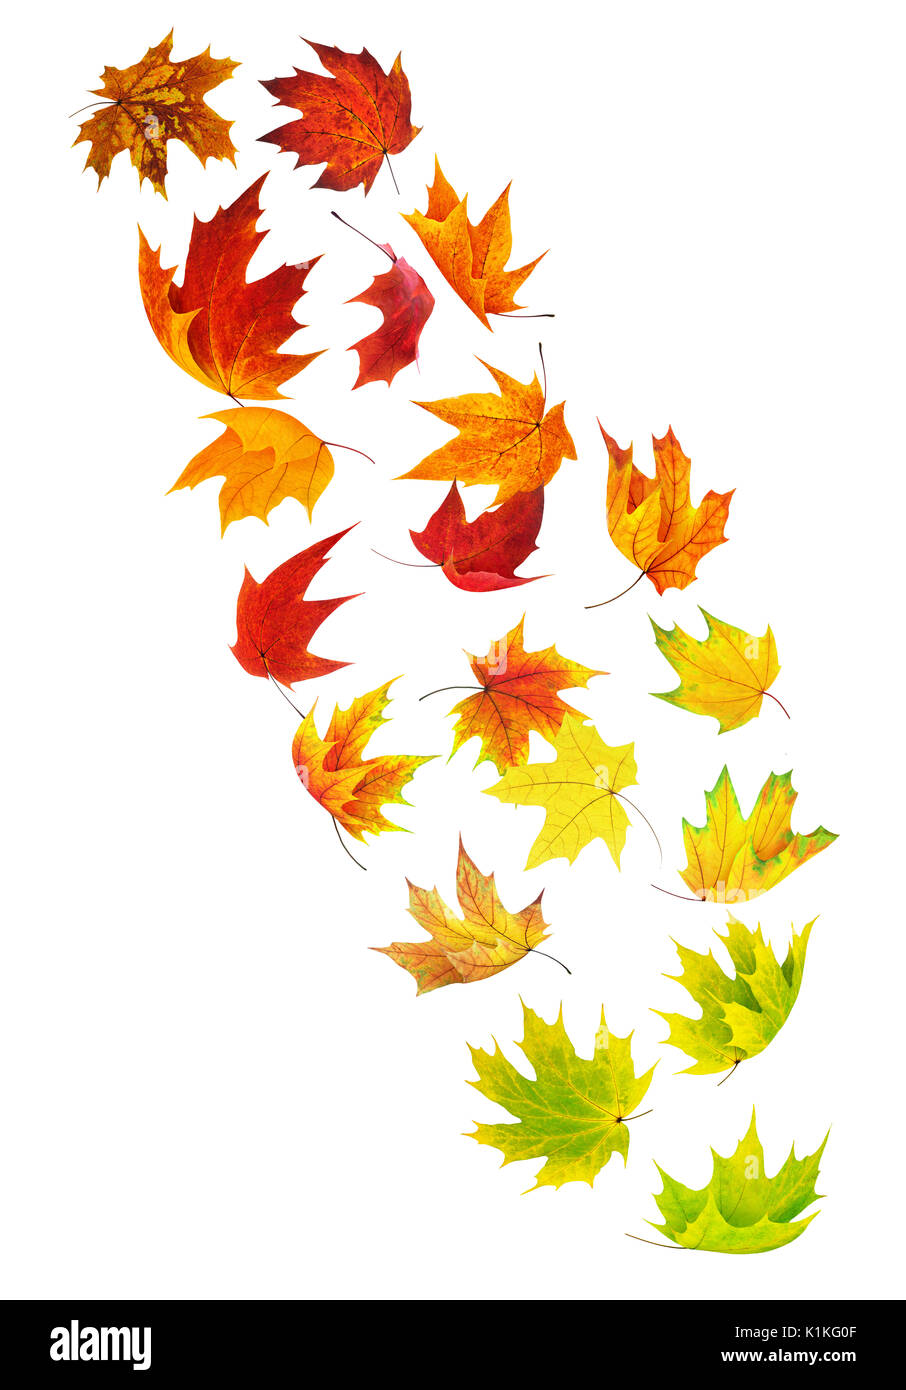 La chute des feuilles isolées. Feuilles d'érable colorées dans l'air isolé sur fond blanc avec clipping path Banque D'Images